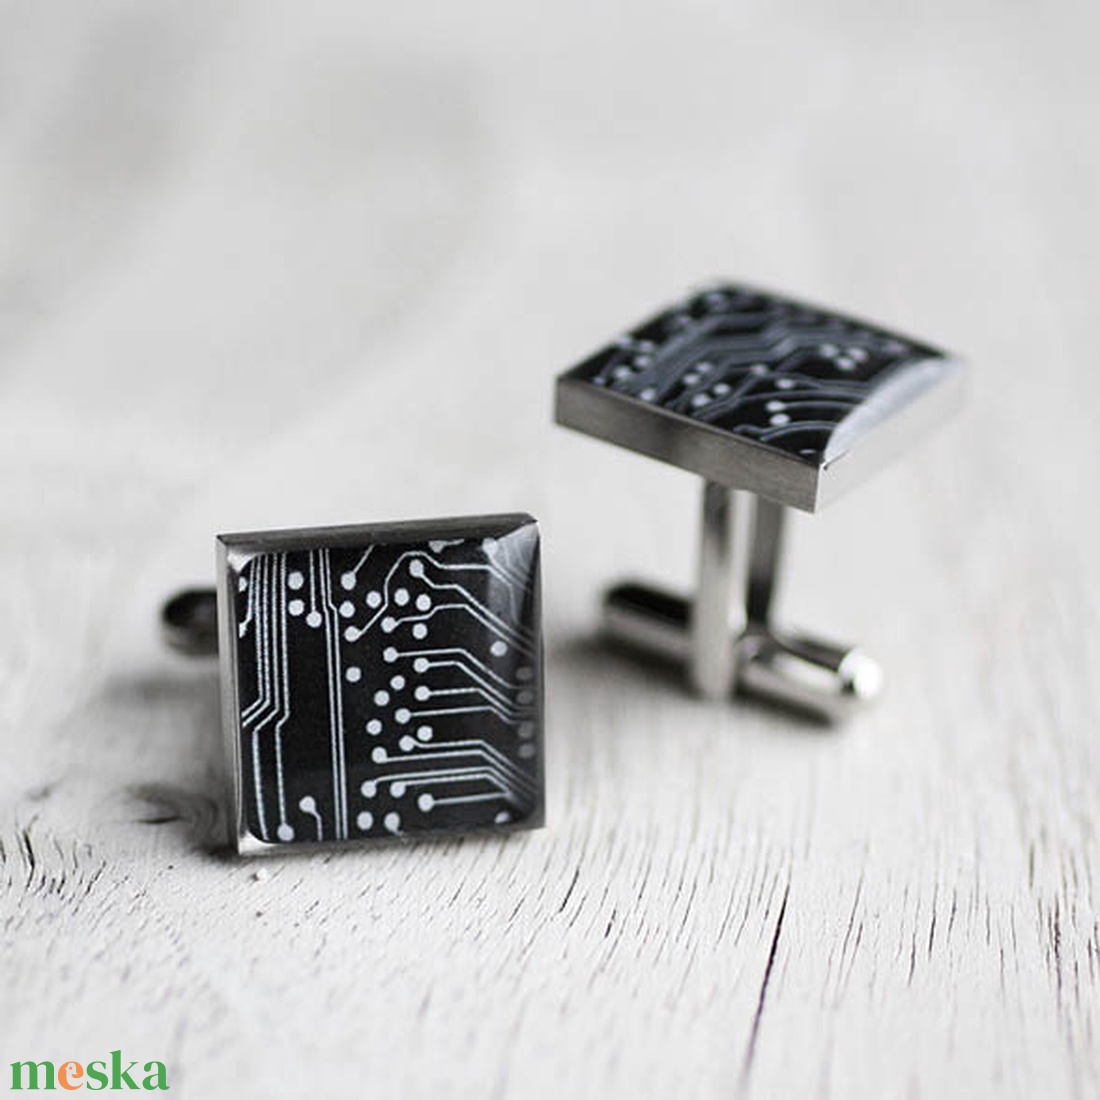 Fekete nyomtatott áramkör mandzsetta gombok (szögletes, orvosi acél